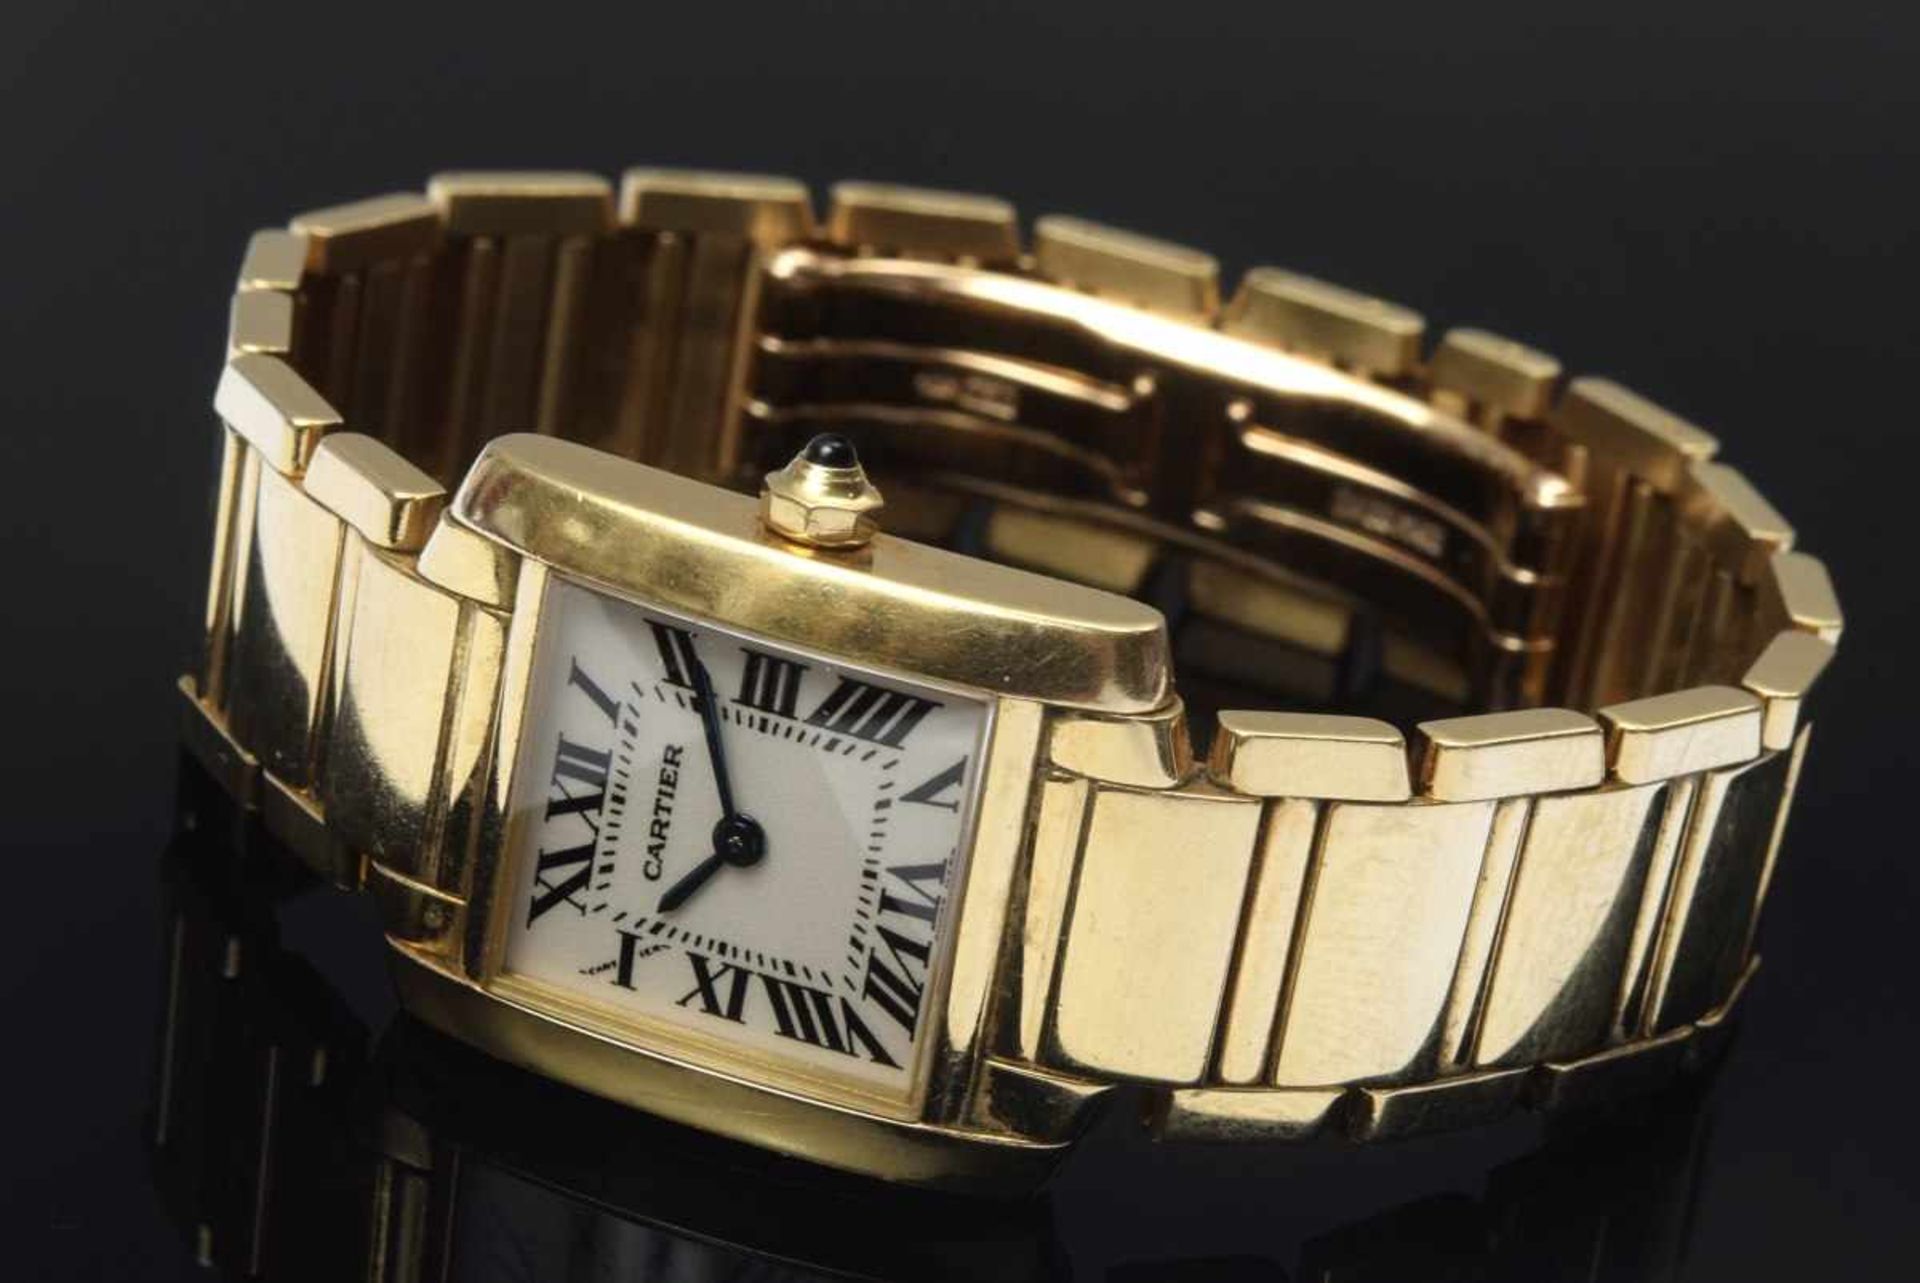 GG 750 Cartier "Tank Française" ladies' watch, quartz movement, dial with roman numerals,